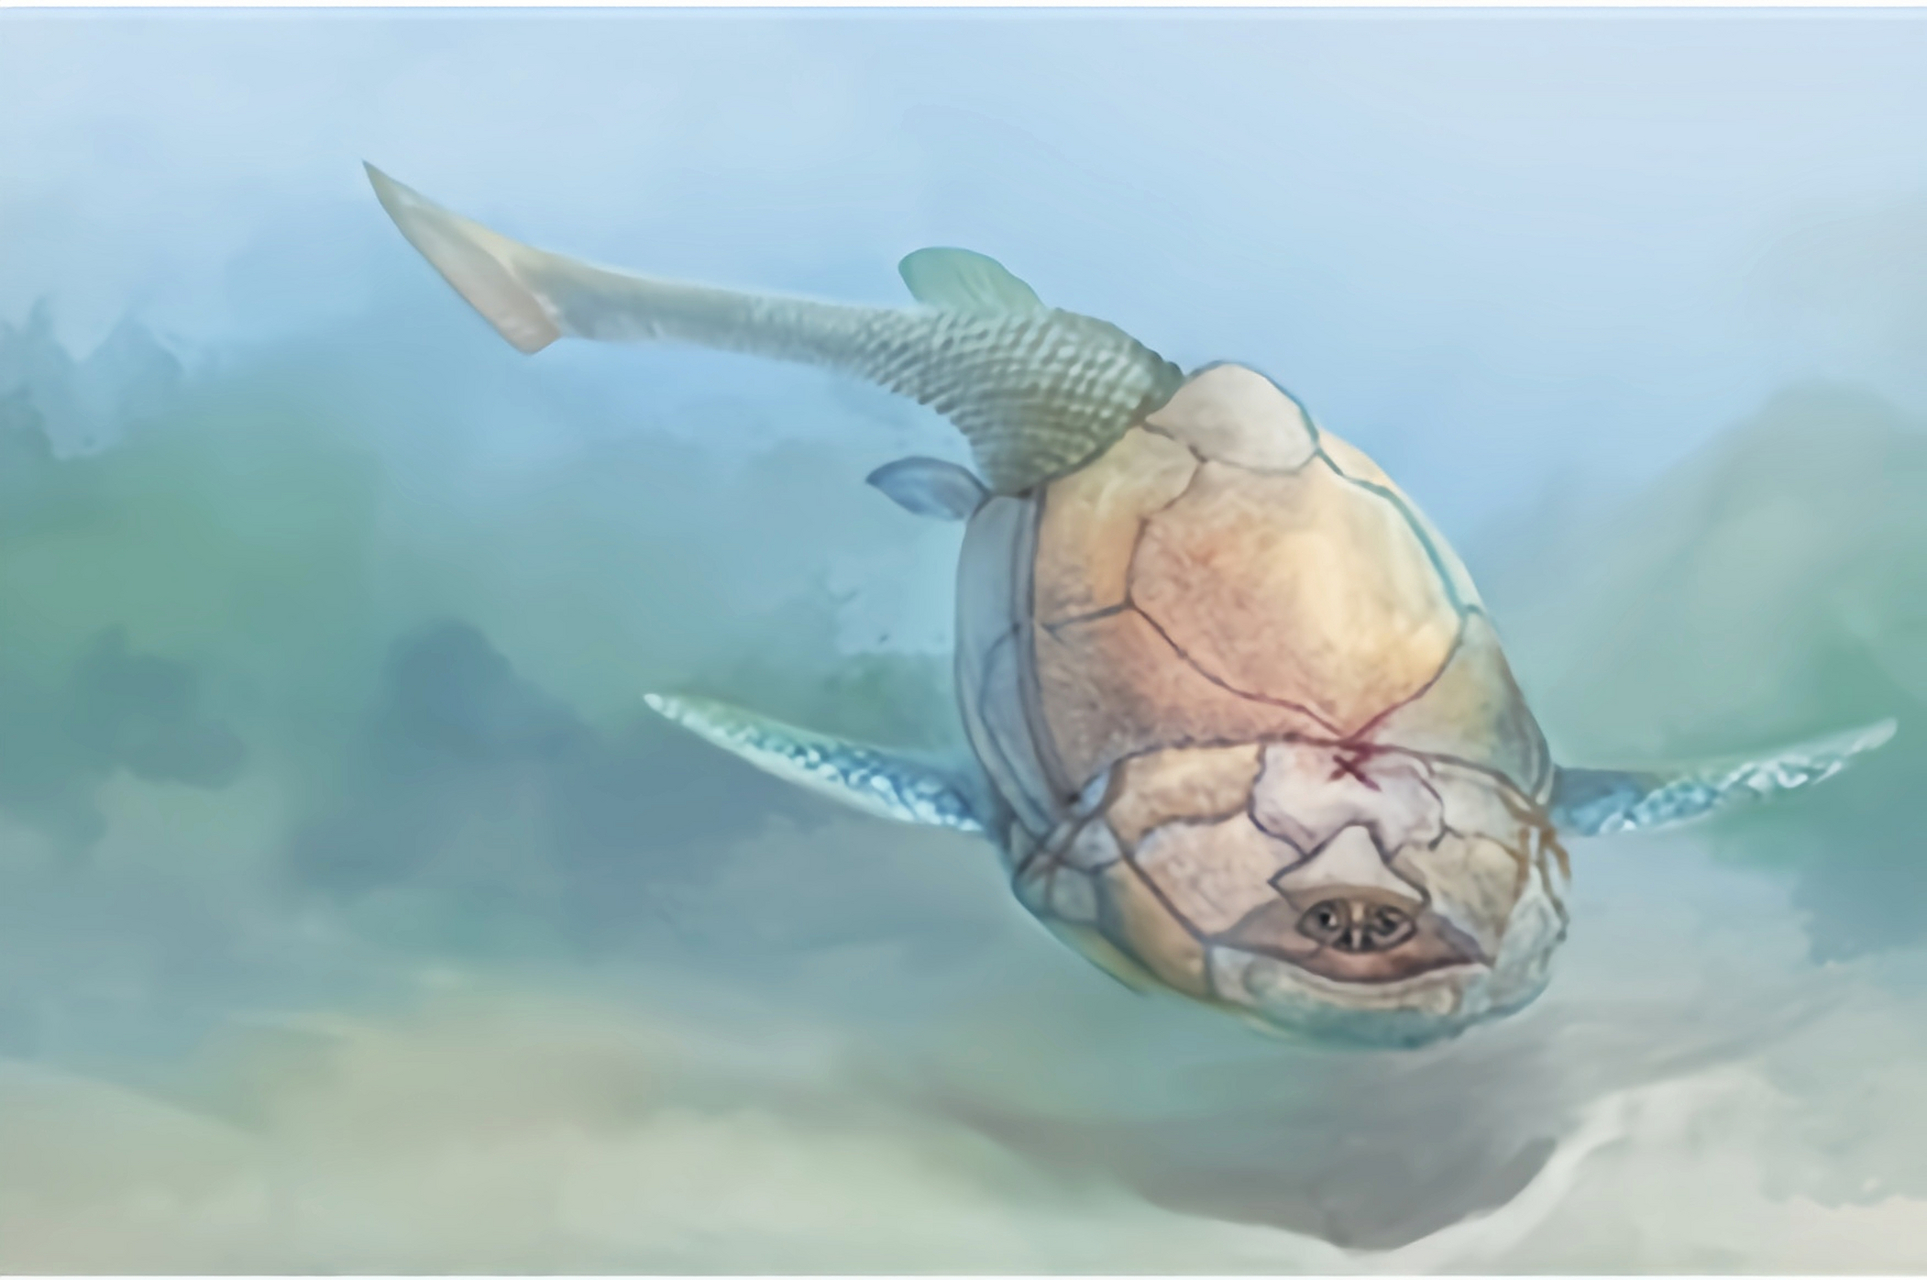 沟鳞鱼属于盾皮鱼类,身体头部,躯干部和胸鳍覆盖的有多块甲片组成的骨